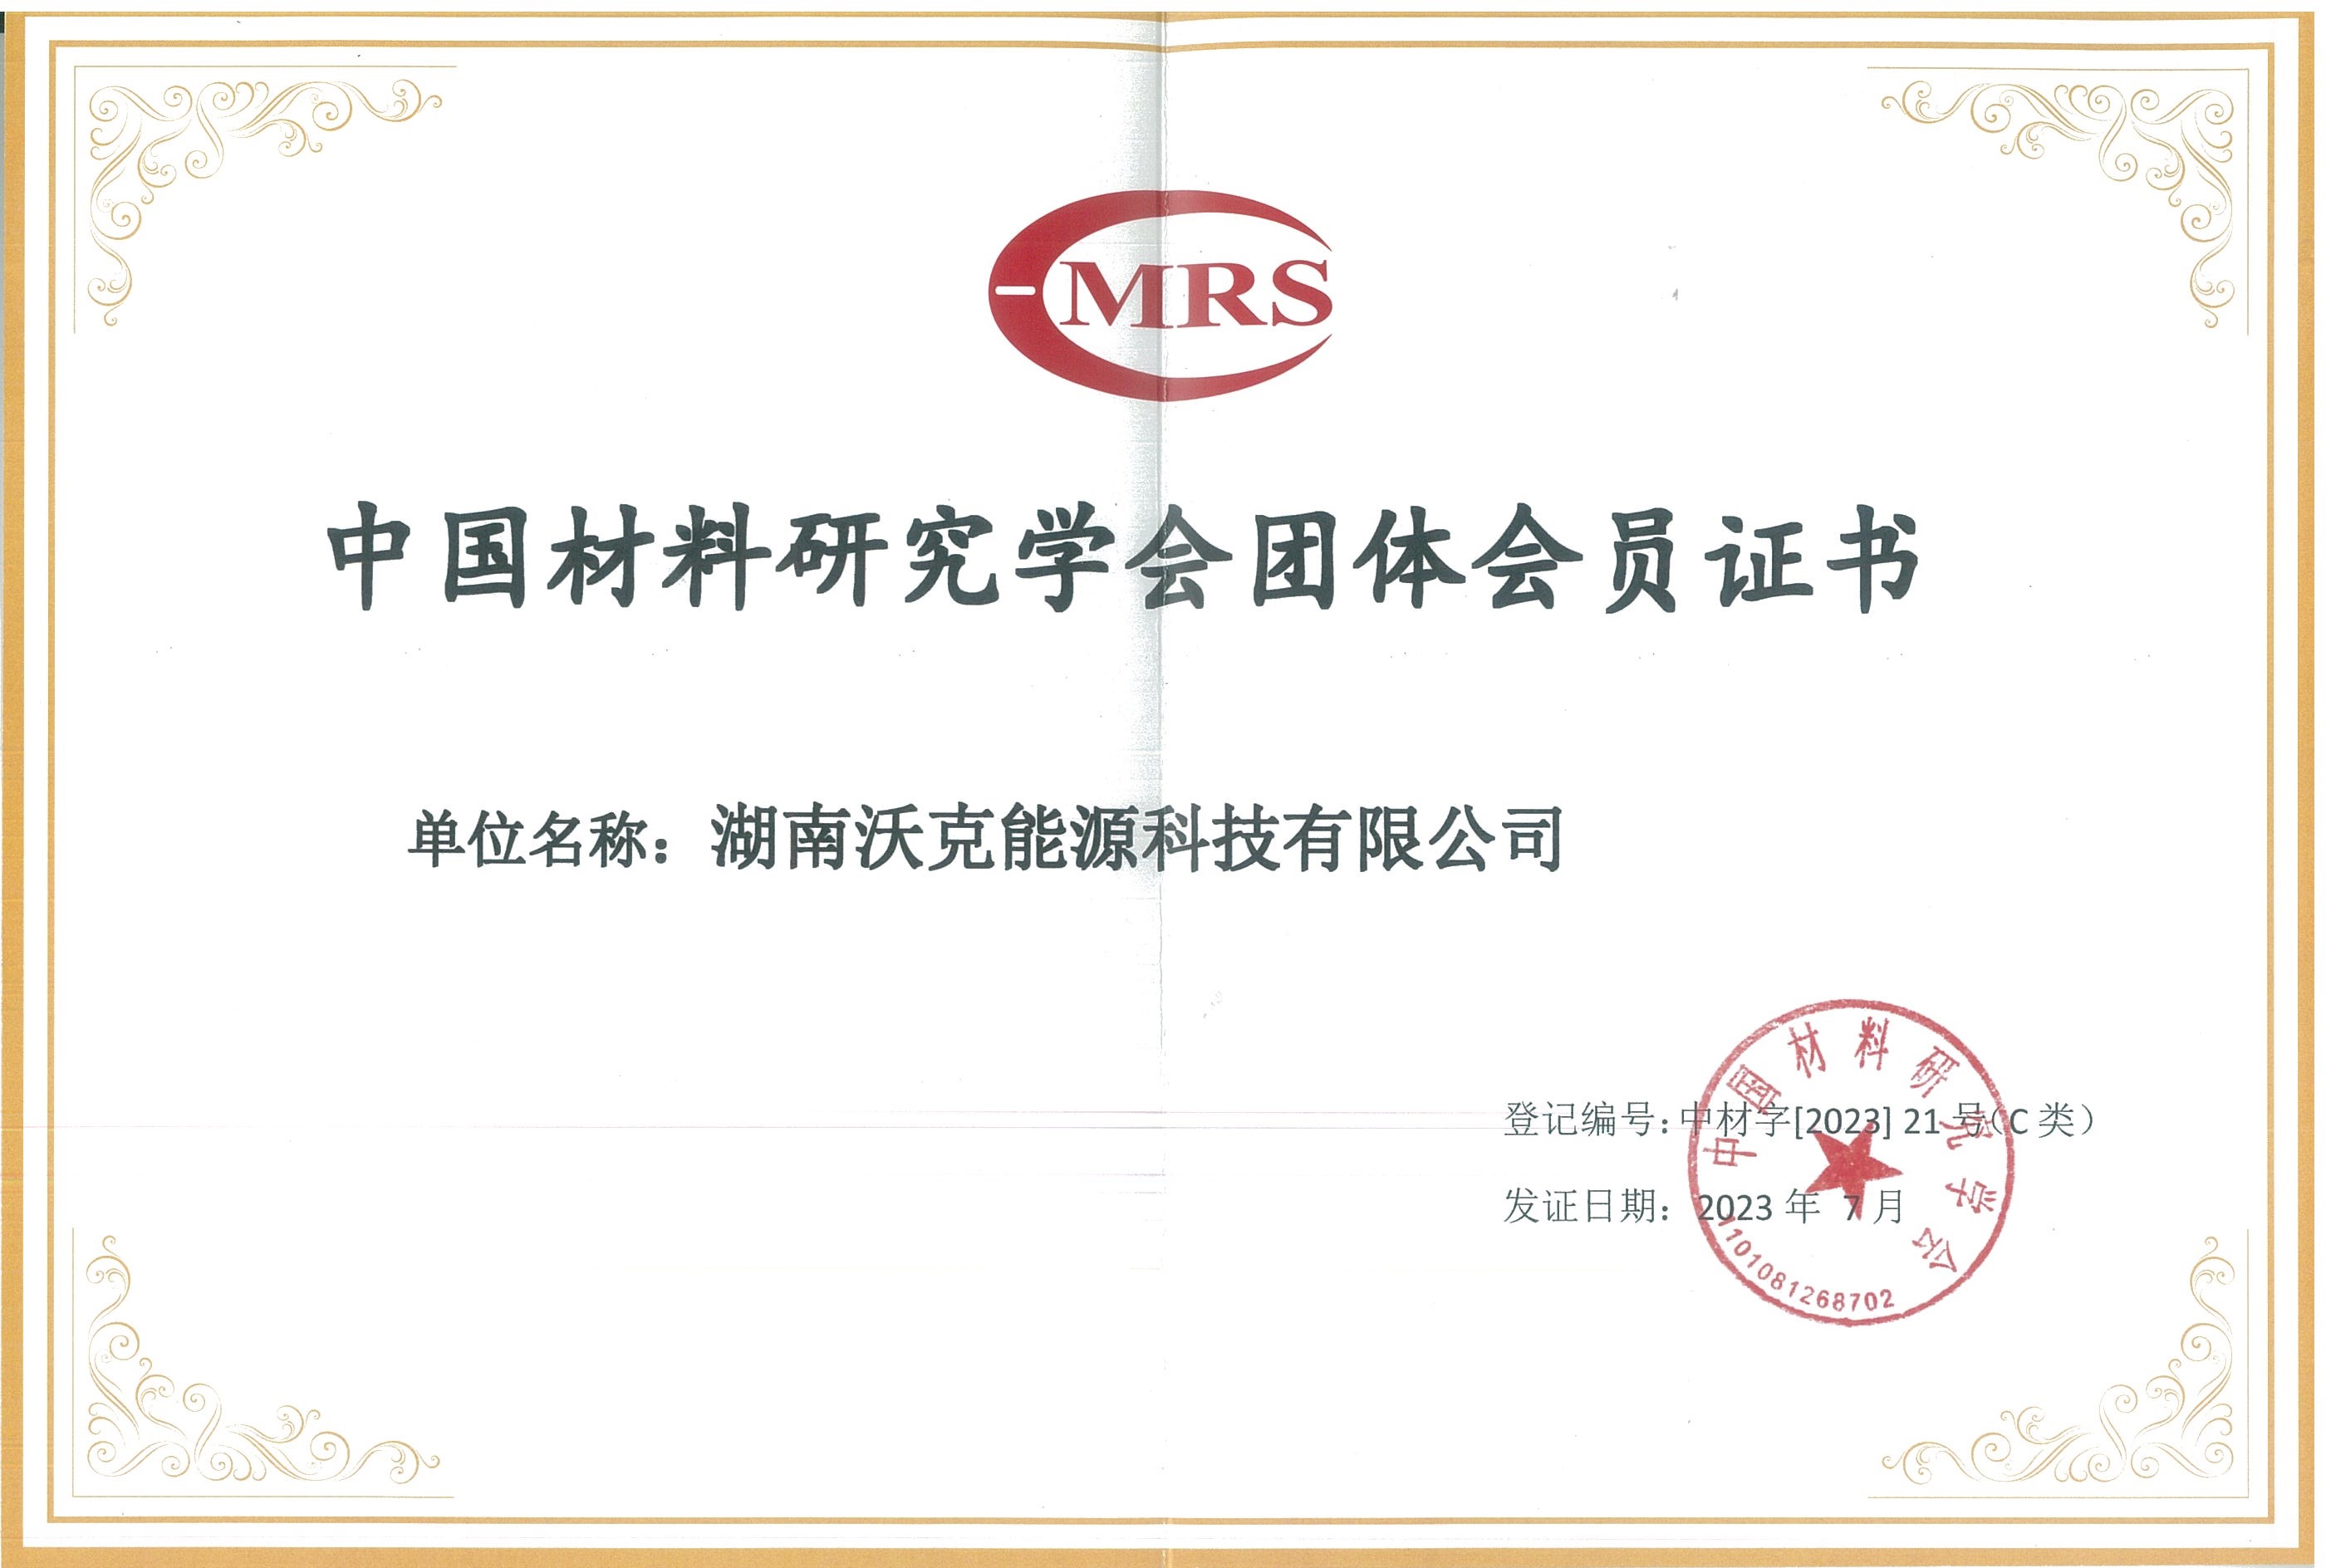 
荣膺中国材料研究学会团体会员证书